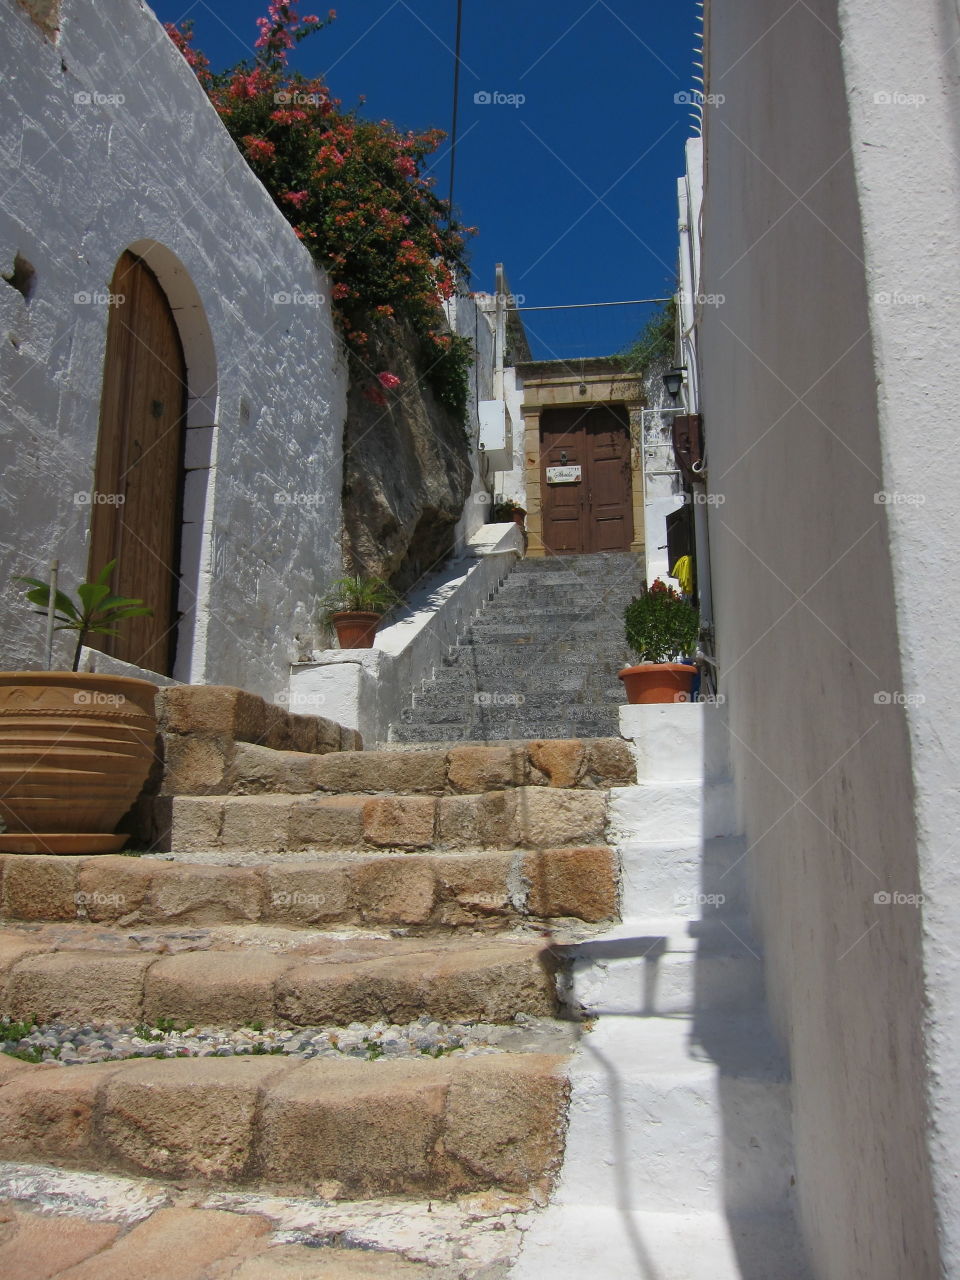 Steps in Greece